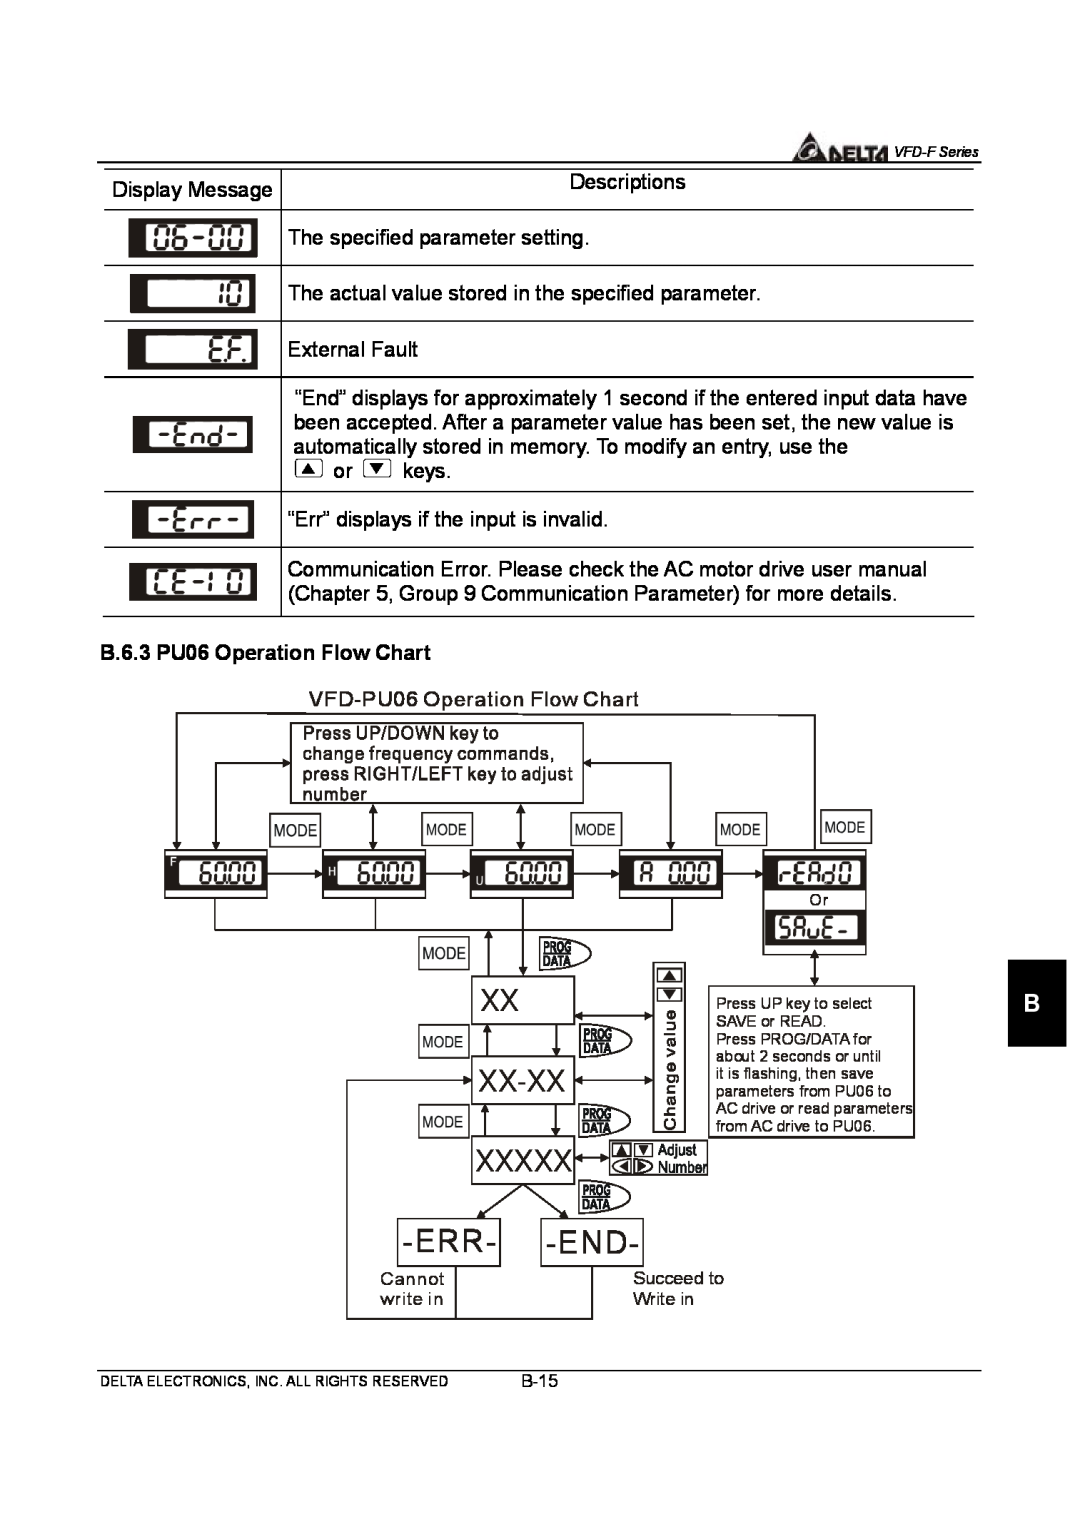 Delta Electronics VFD-F Series manual Xx-Xx, Xxxxx -Err- -End, B.6.3 PU06 Operation Flow Chart 